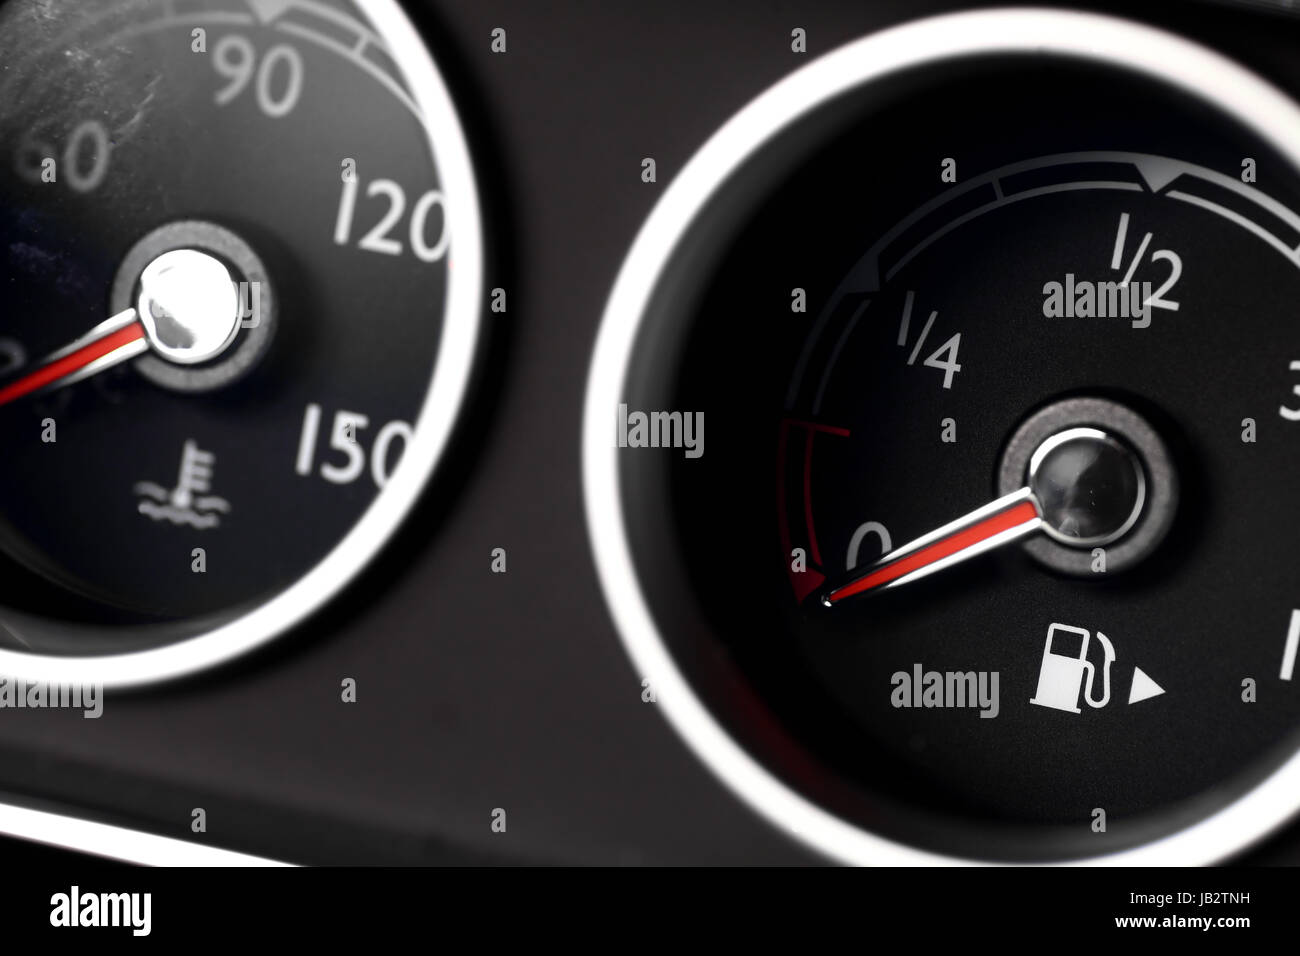 Detail der Temperaturanzeige im Auto Stockfotografie - Alamy